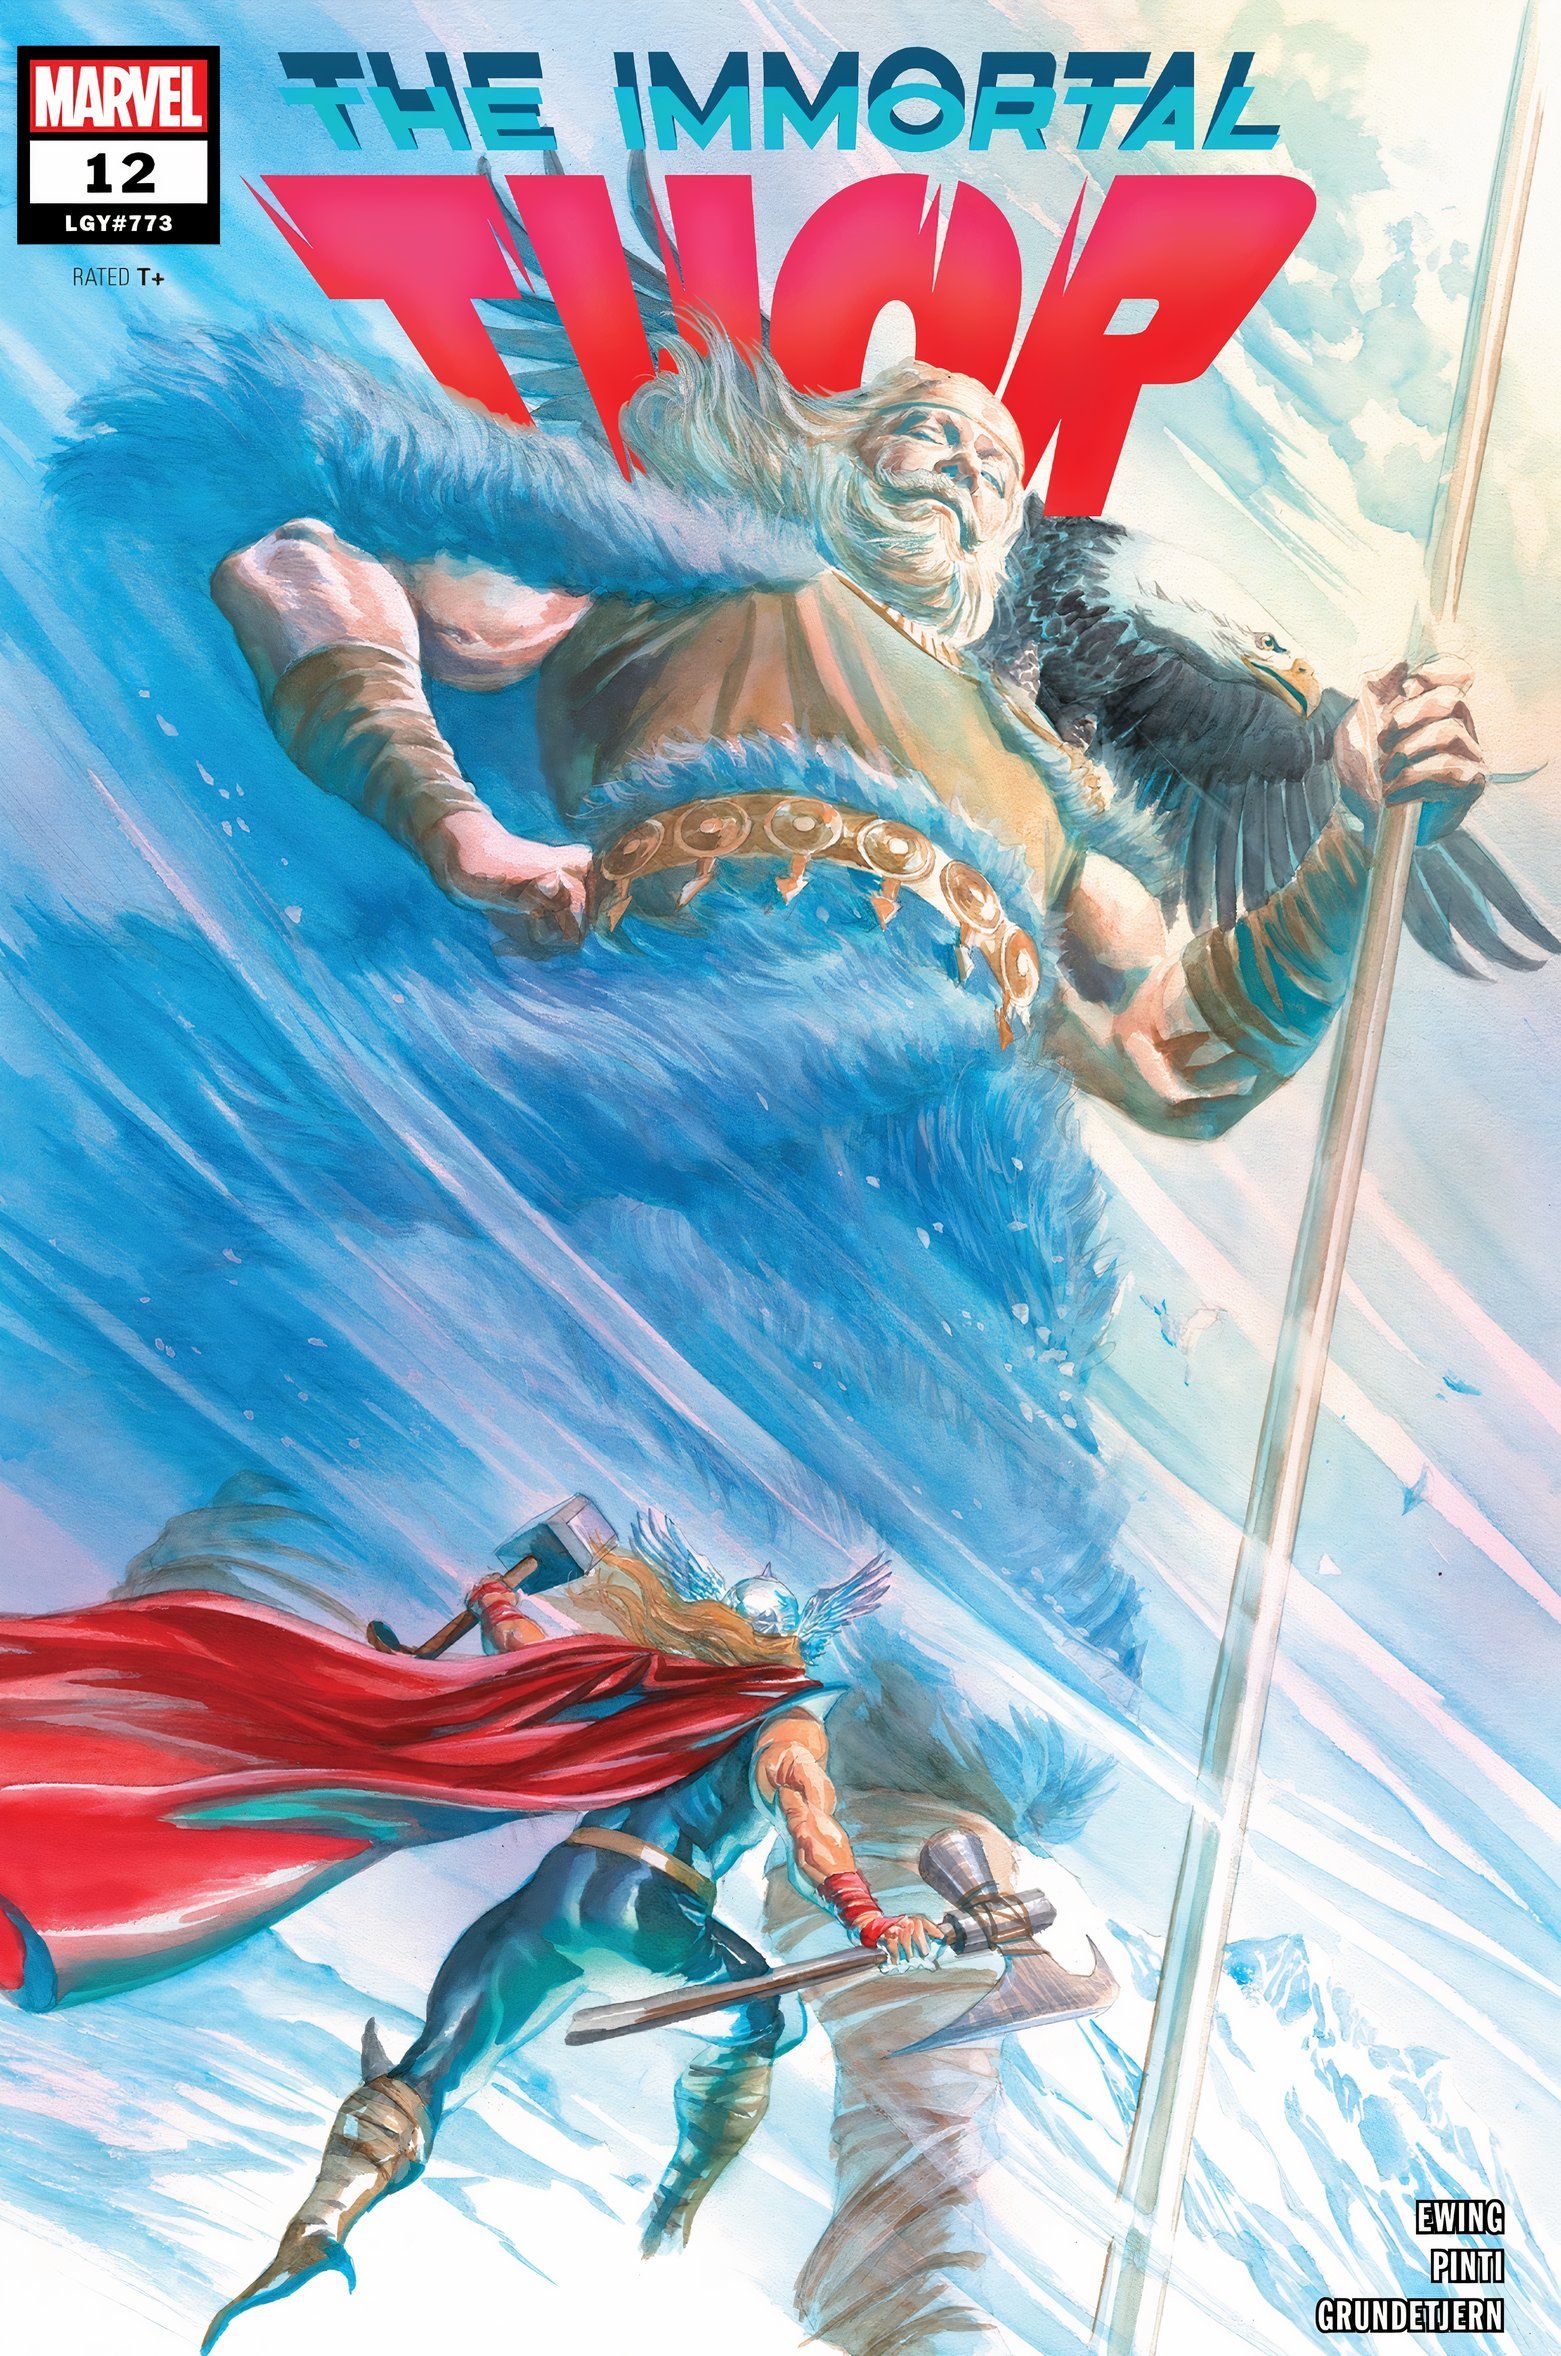 Immortal Thor #12, apresentando Thor aos pés do gigante Utgard-Odin conhecido como Bari.